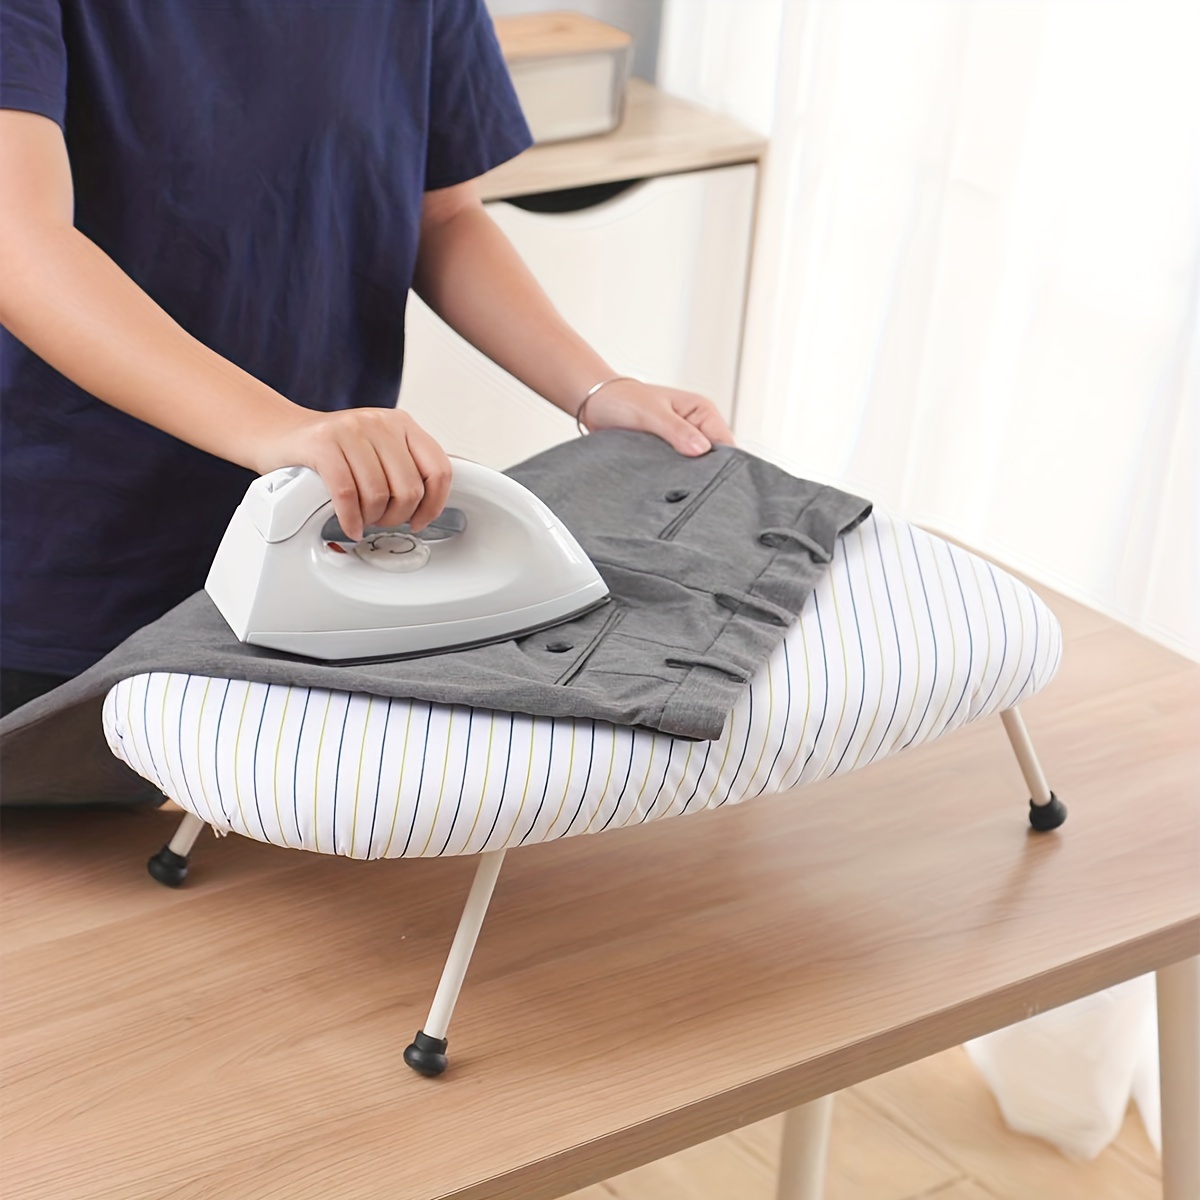 NUOLUX 1pc Mini Ironing Sleeve Rack Folding Ironing Board Ironing Tool for  Home